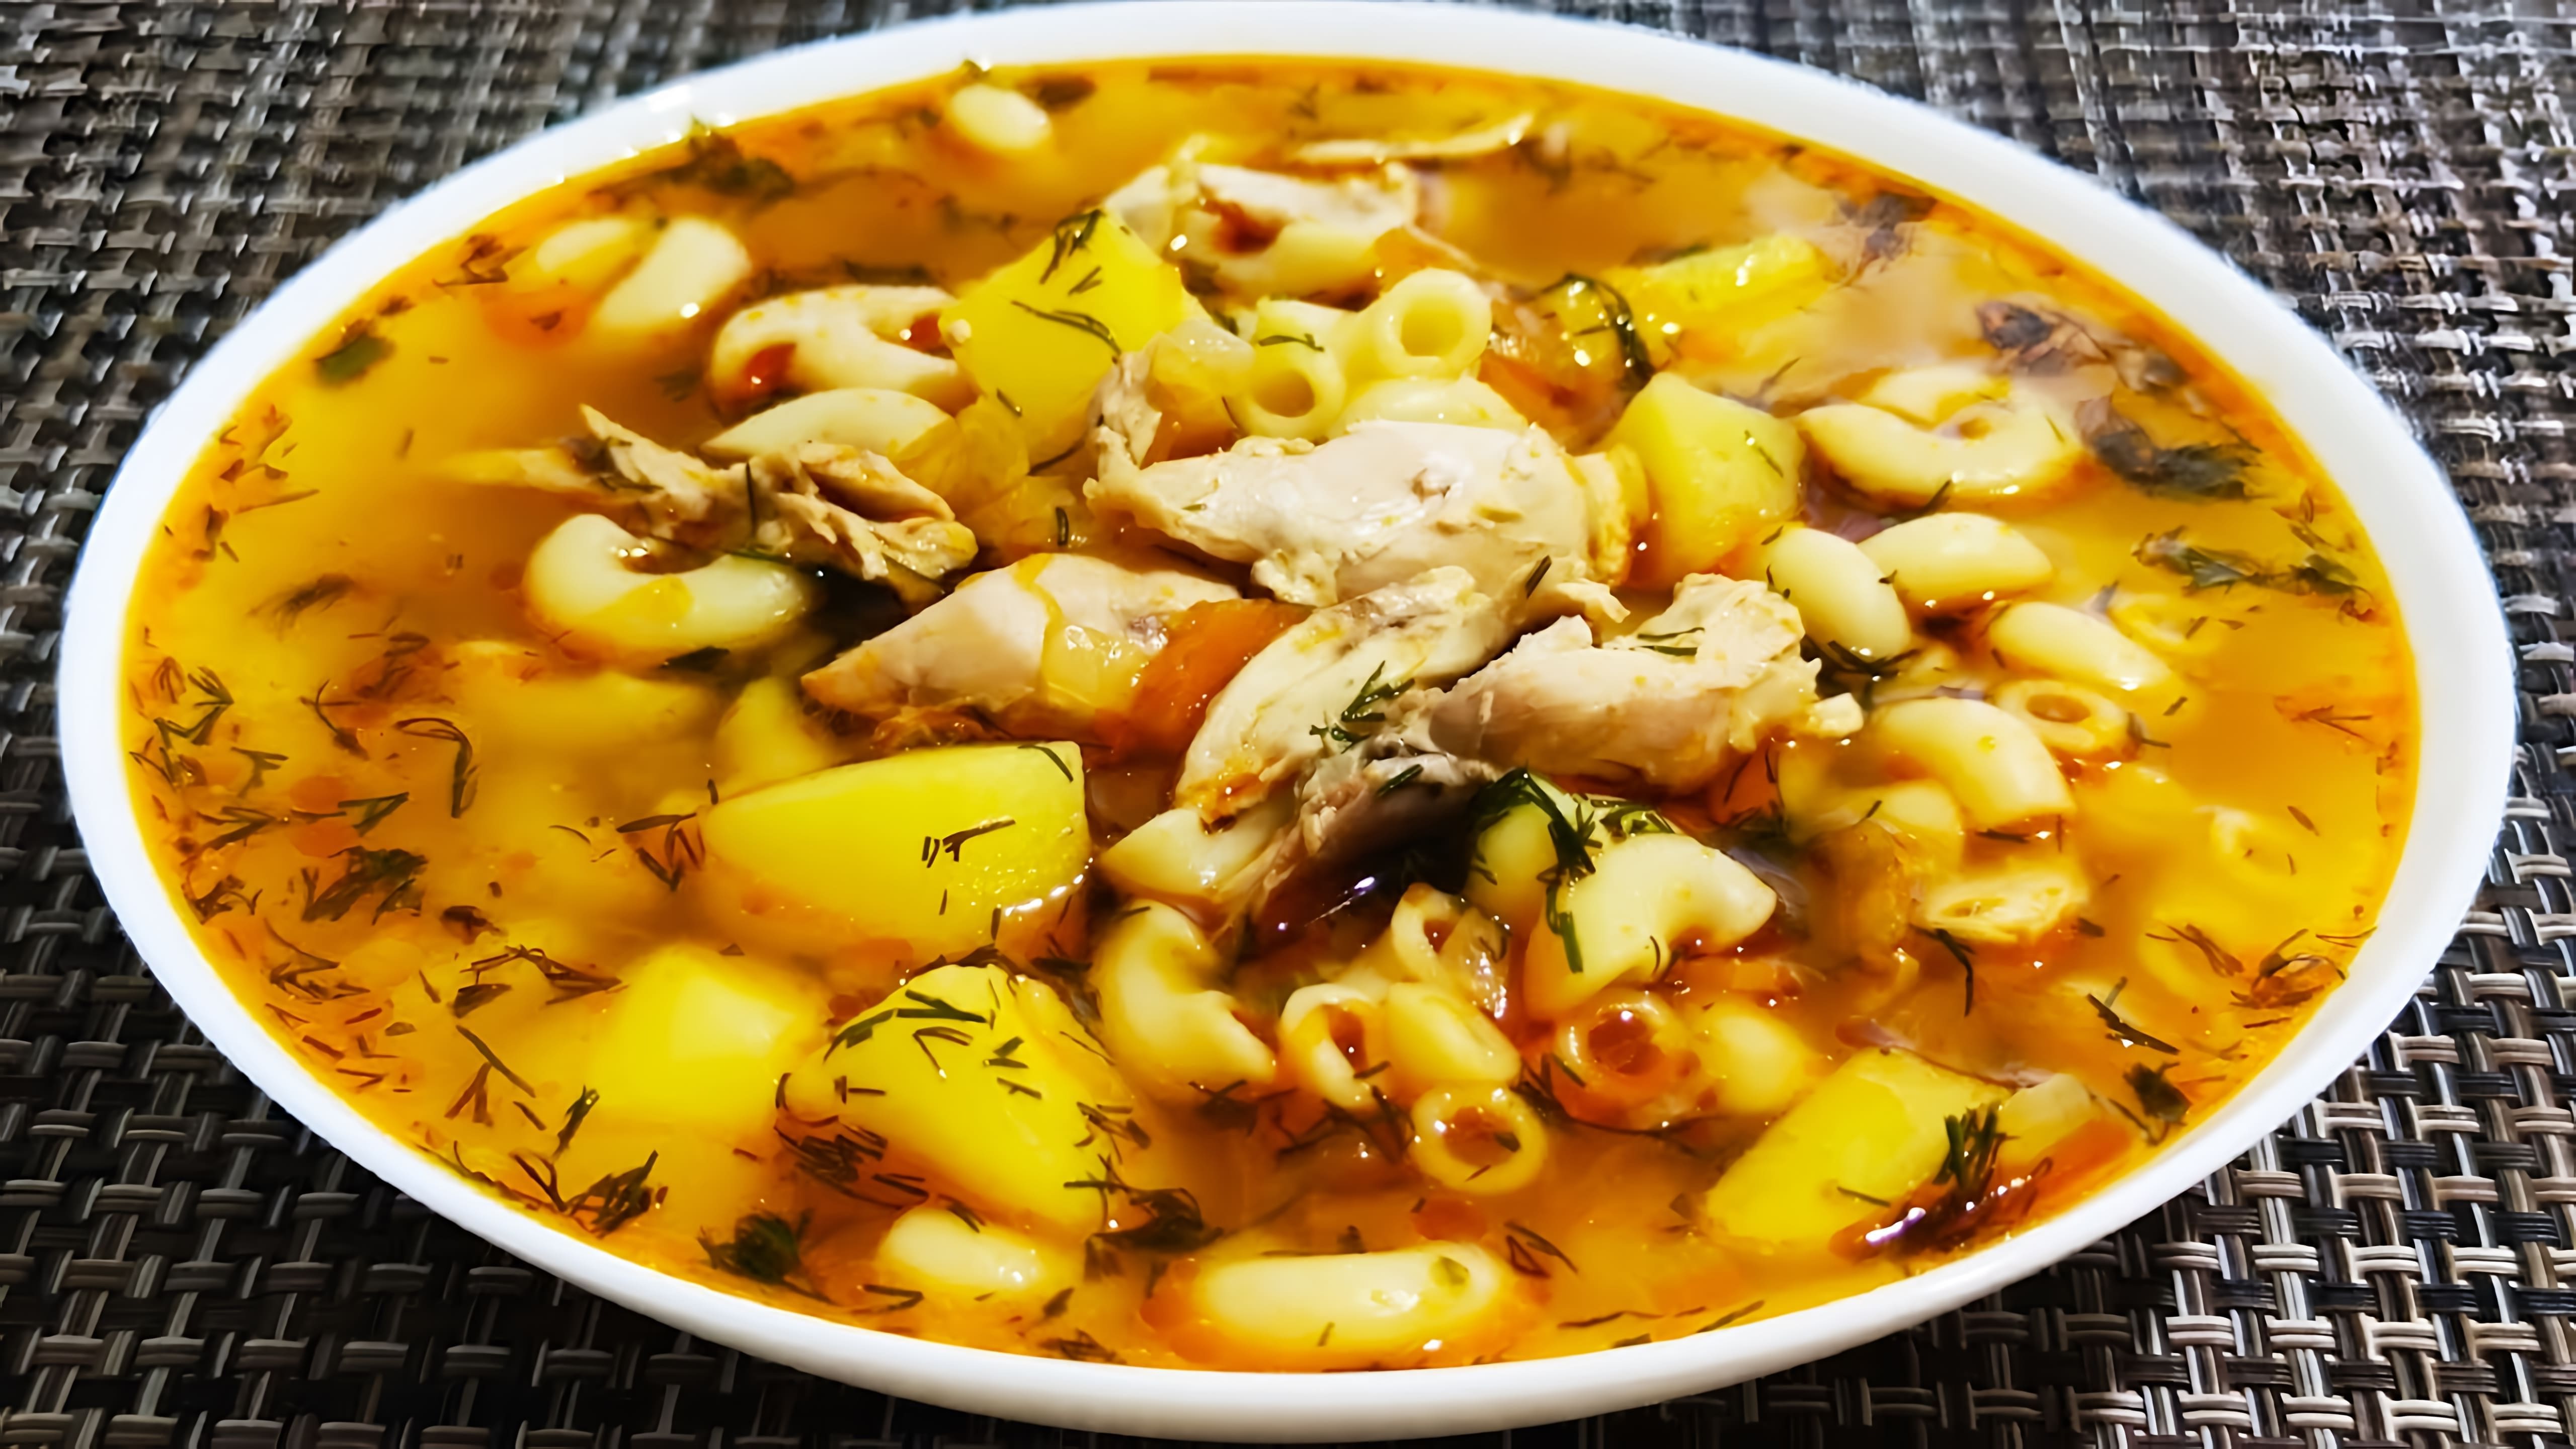 В этом видео демонстрируется процесс приготовления вкусного куриного супа с макаронами